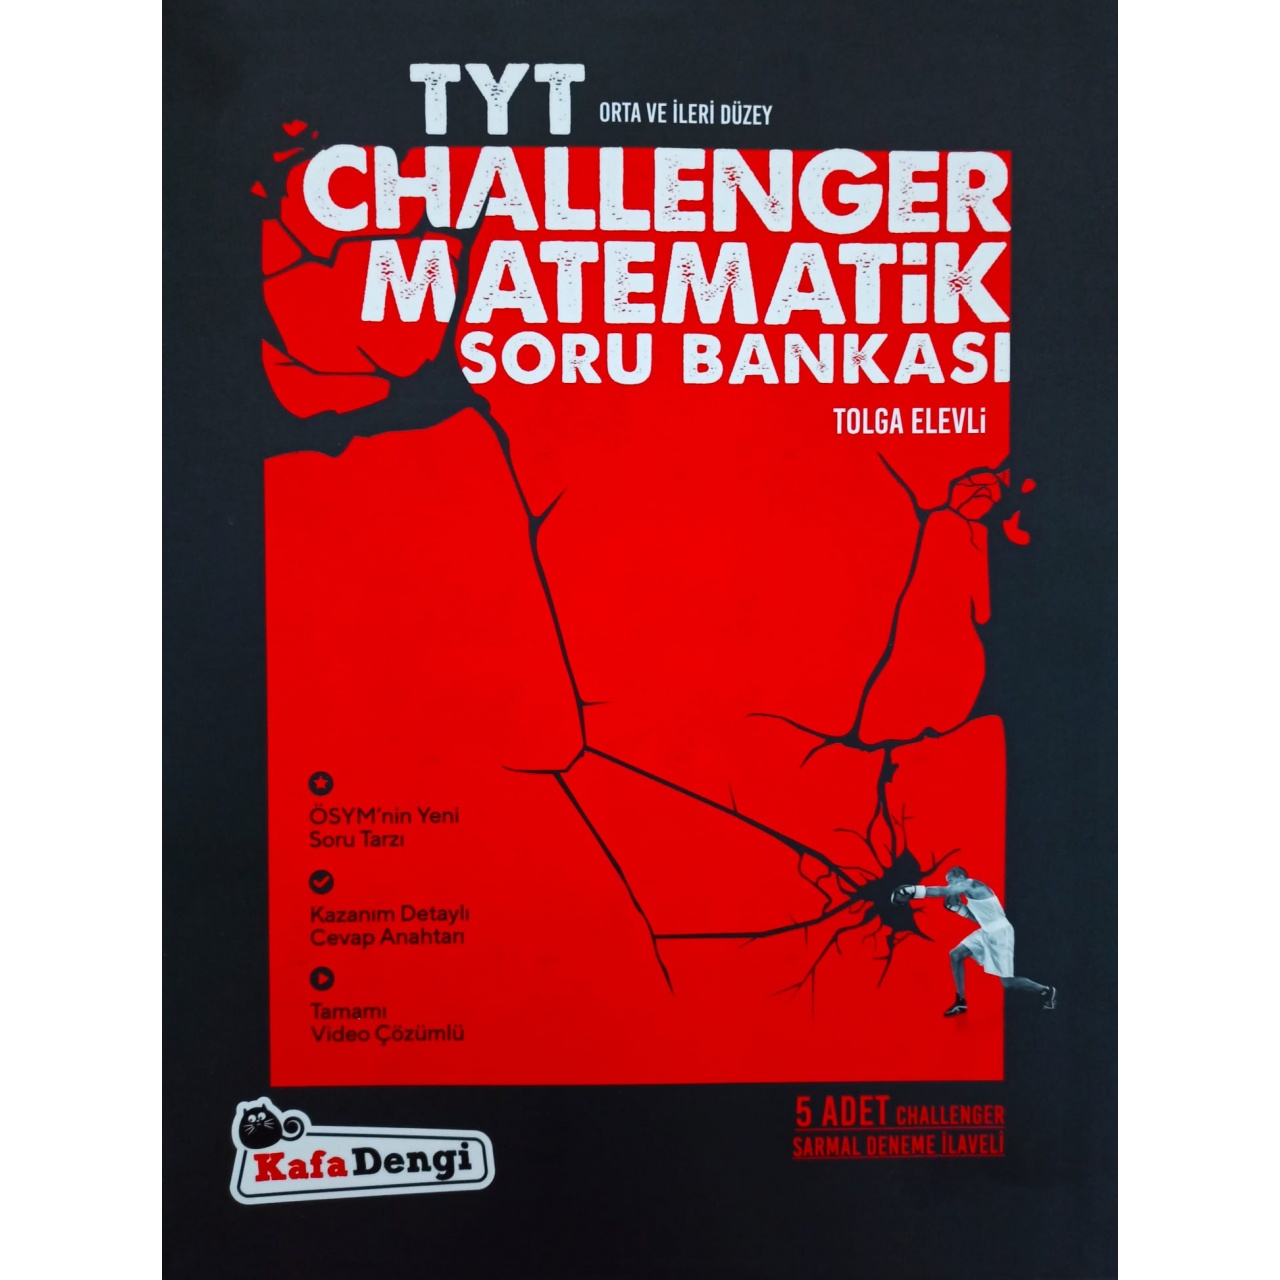 TYT Challenger Matematik Soru Bankası Kafadengi Yayınları